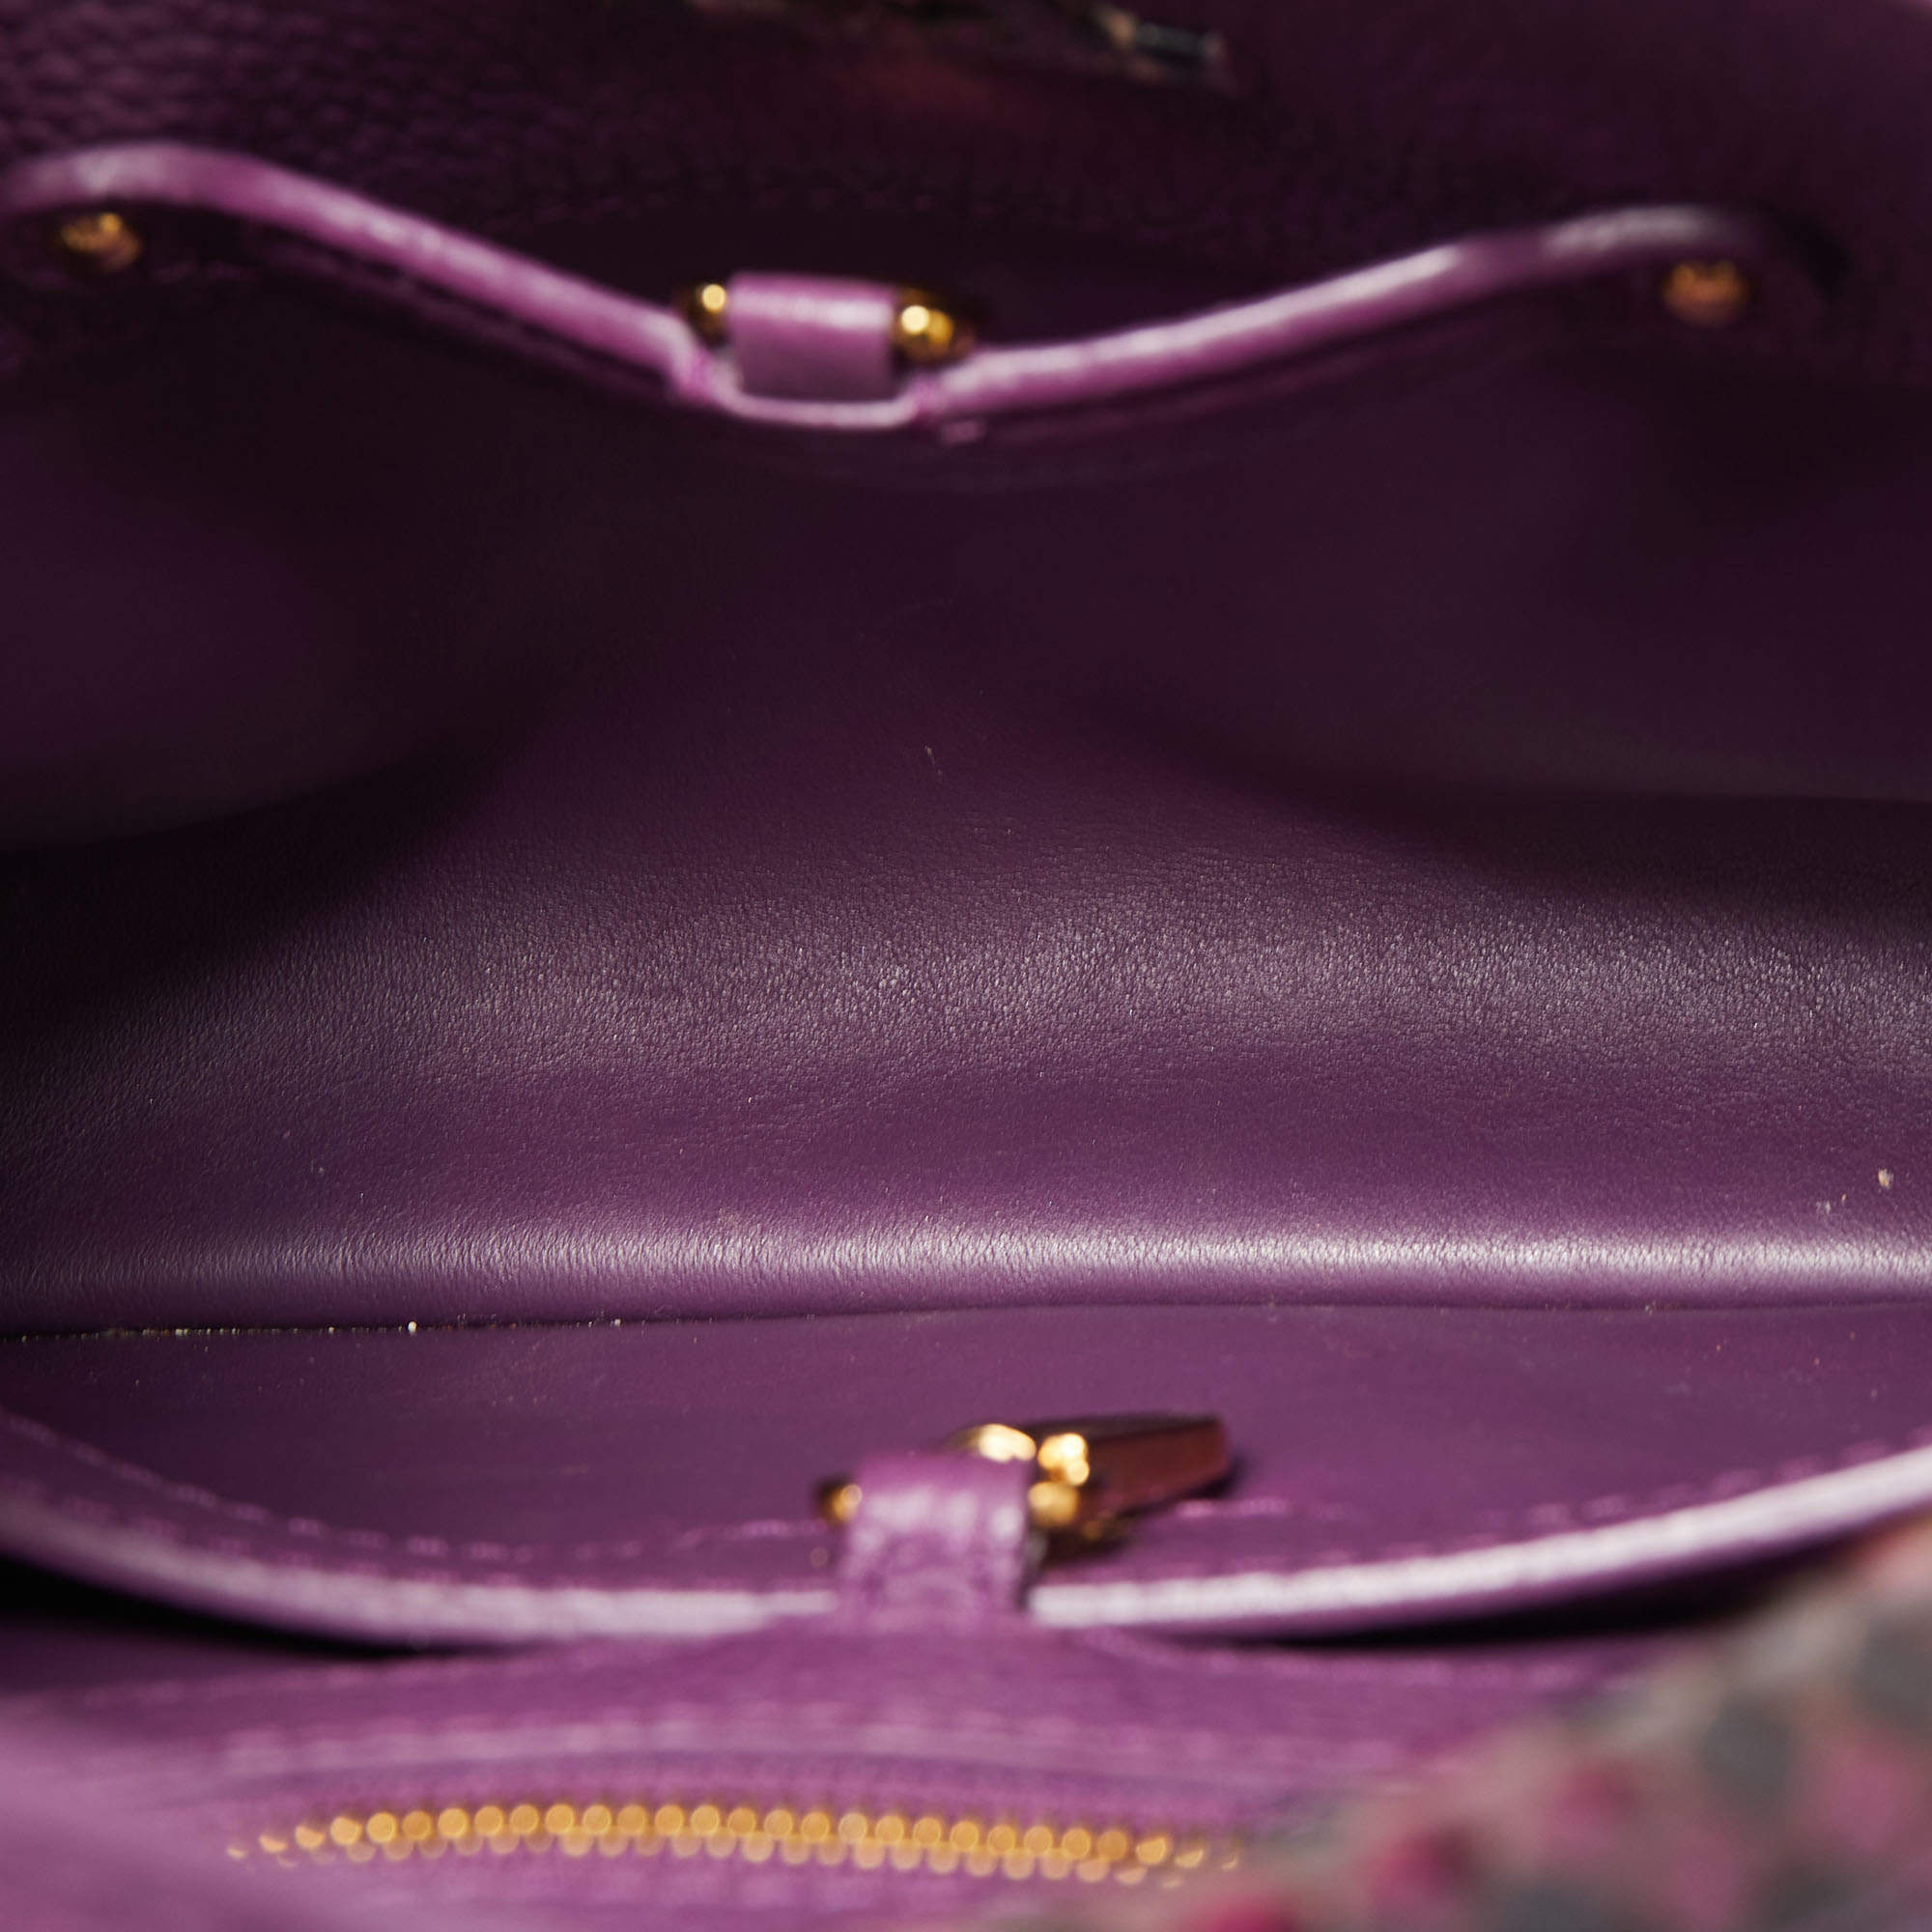 louis vuitton purple bag